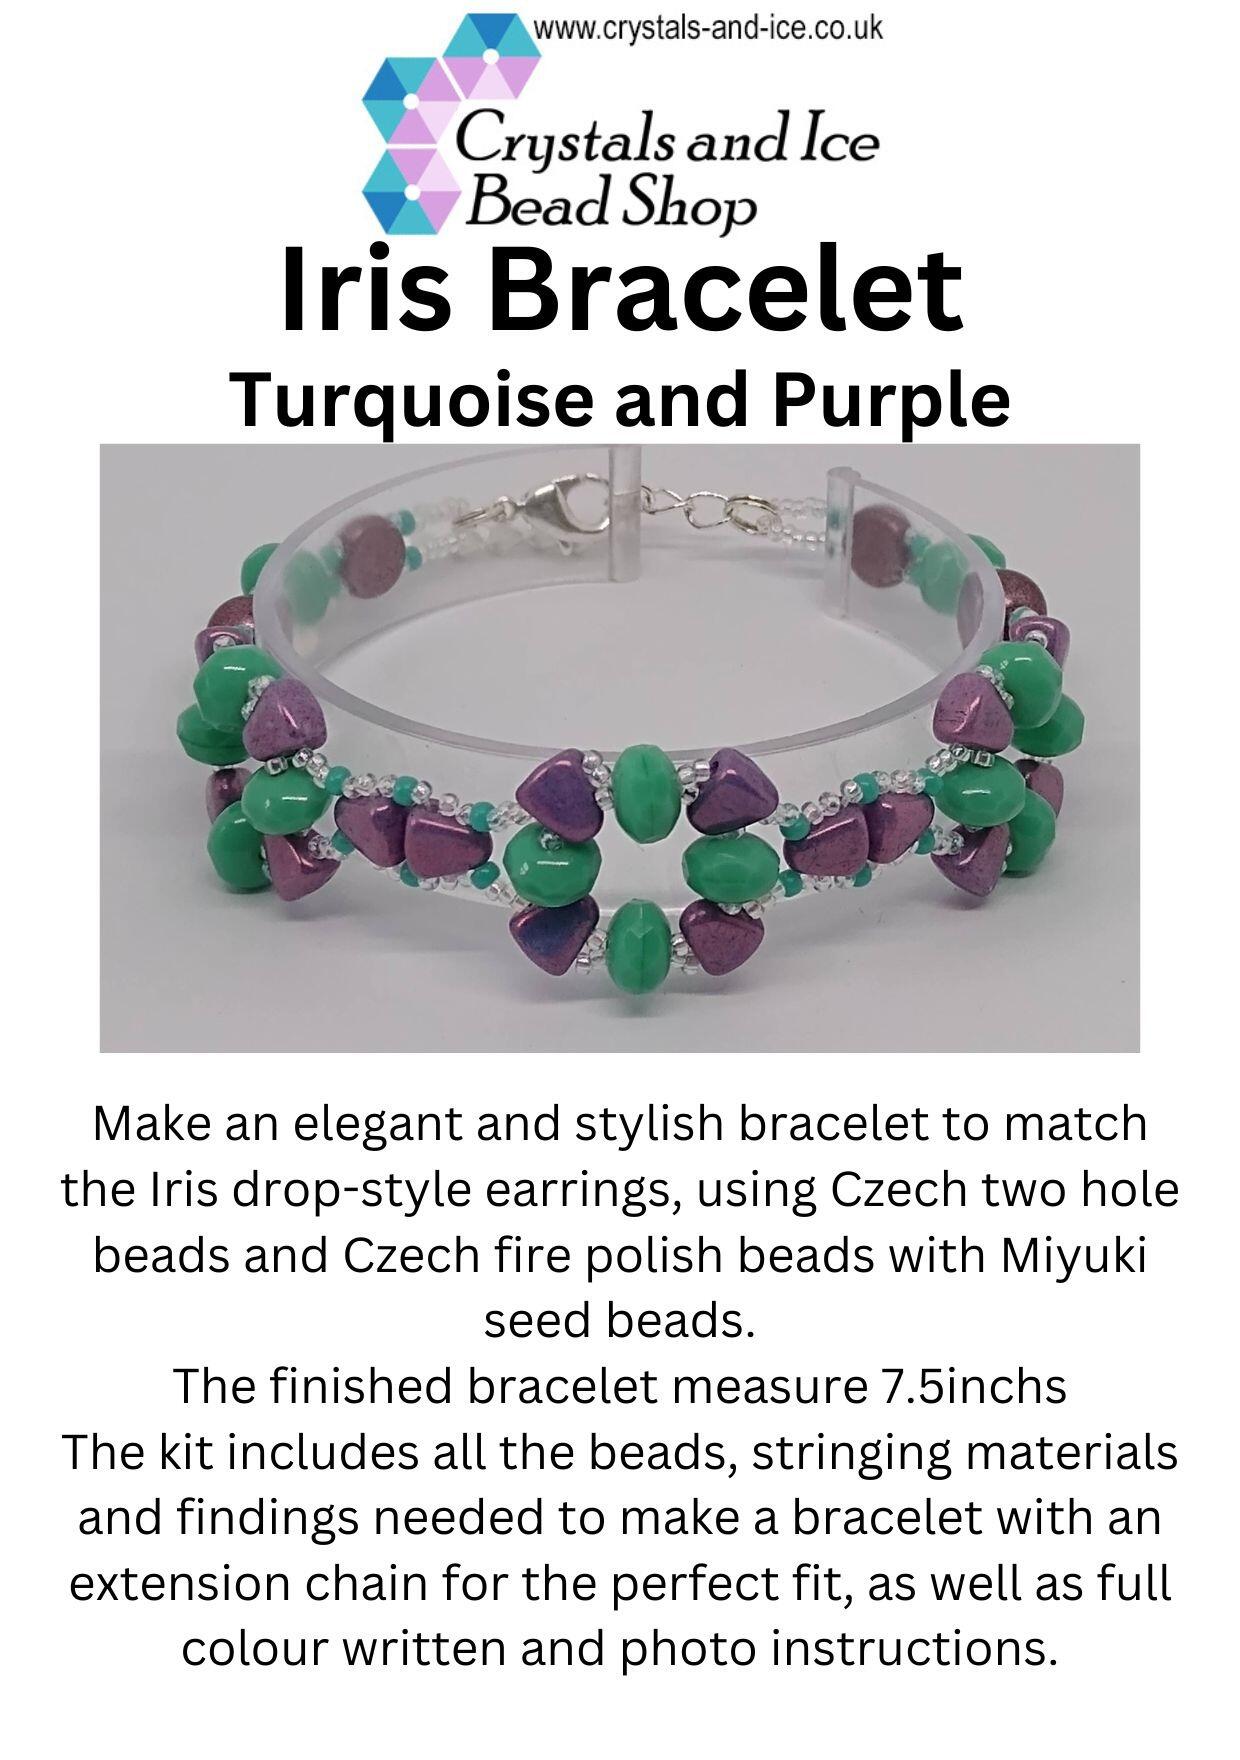 Iris Bracelet Kit - Turquoise and Purple